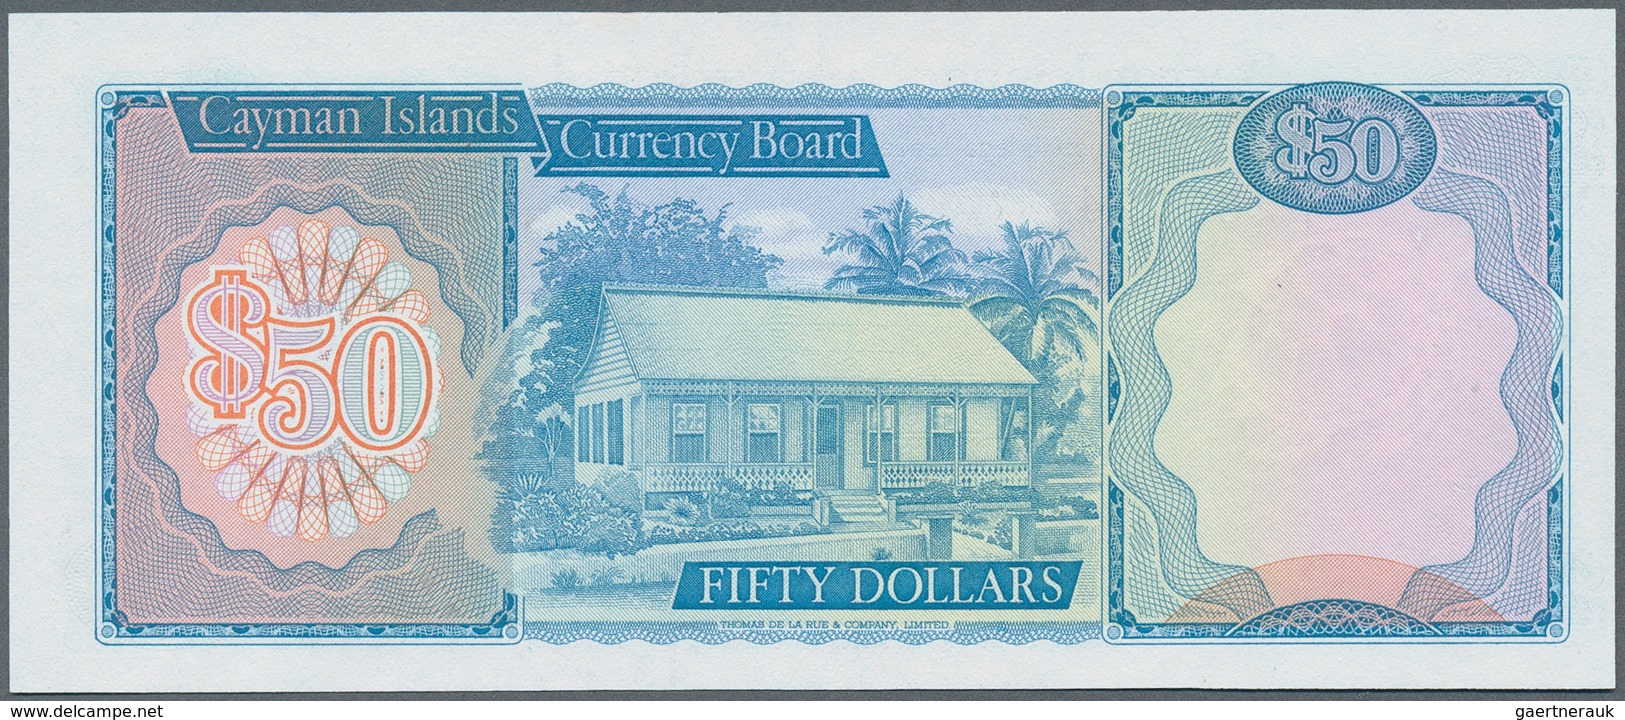 01264 Cayman Islands: 50 Dollras L.1974, P. 10 In Condition: UNC. - Islas Caimán